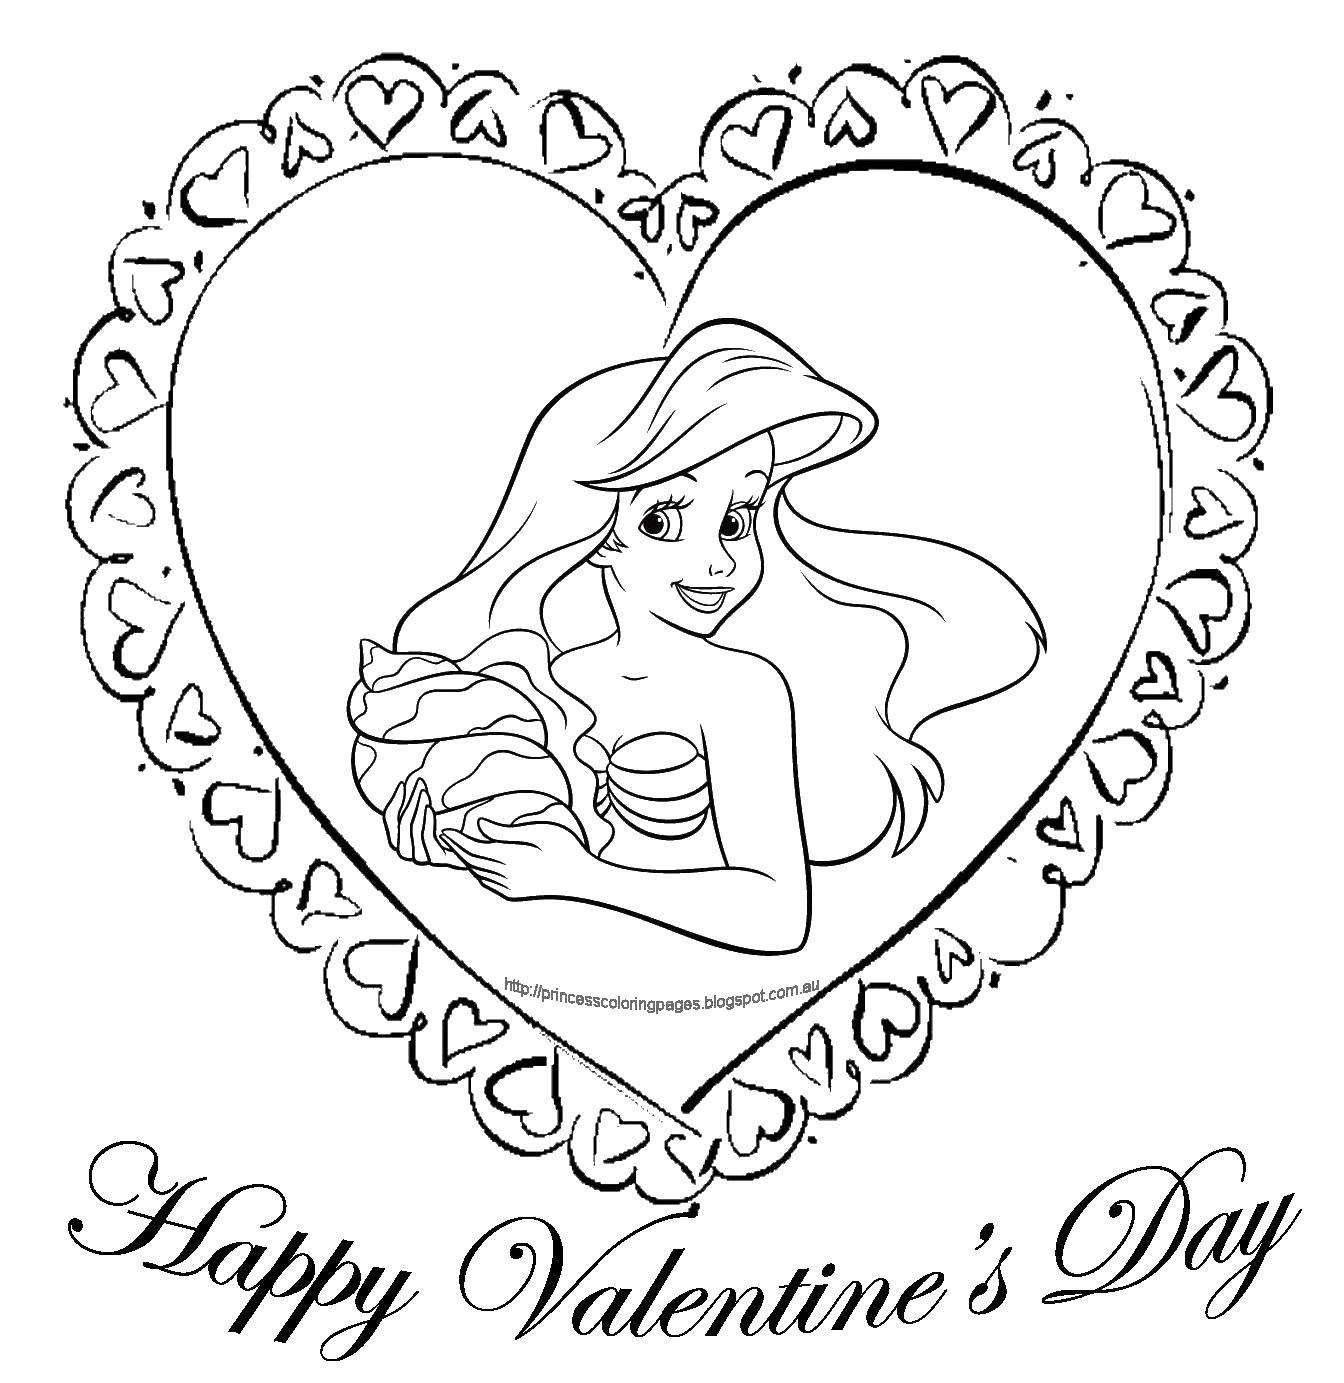 Опис: розмальовки  Аріель з черепашкою. Категорія: День святого валентина. Теги:  русалка, черепашка, дівчина.